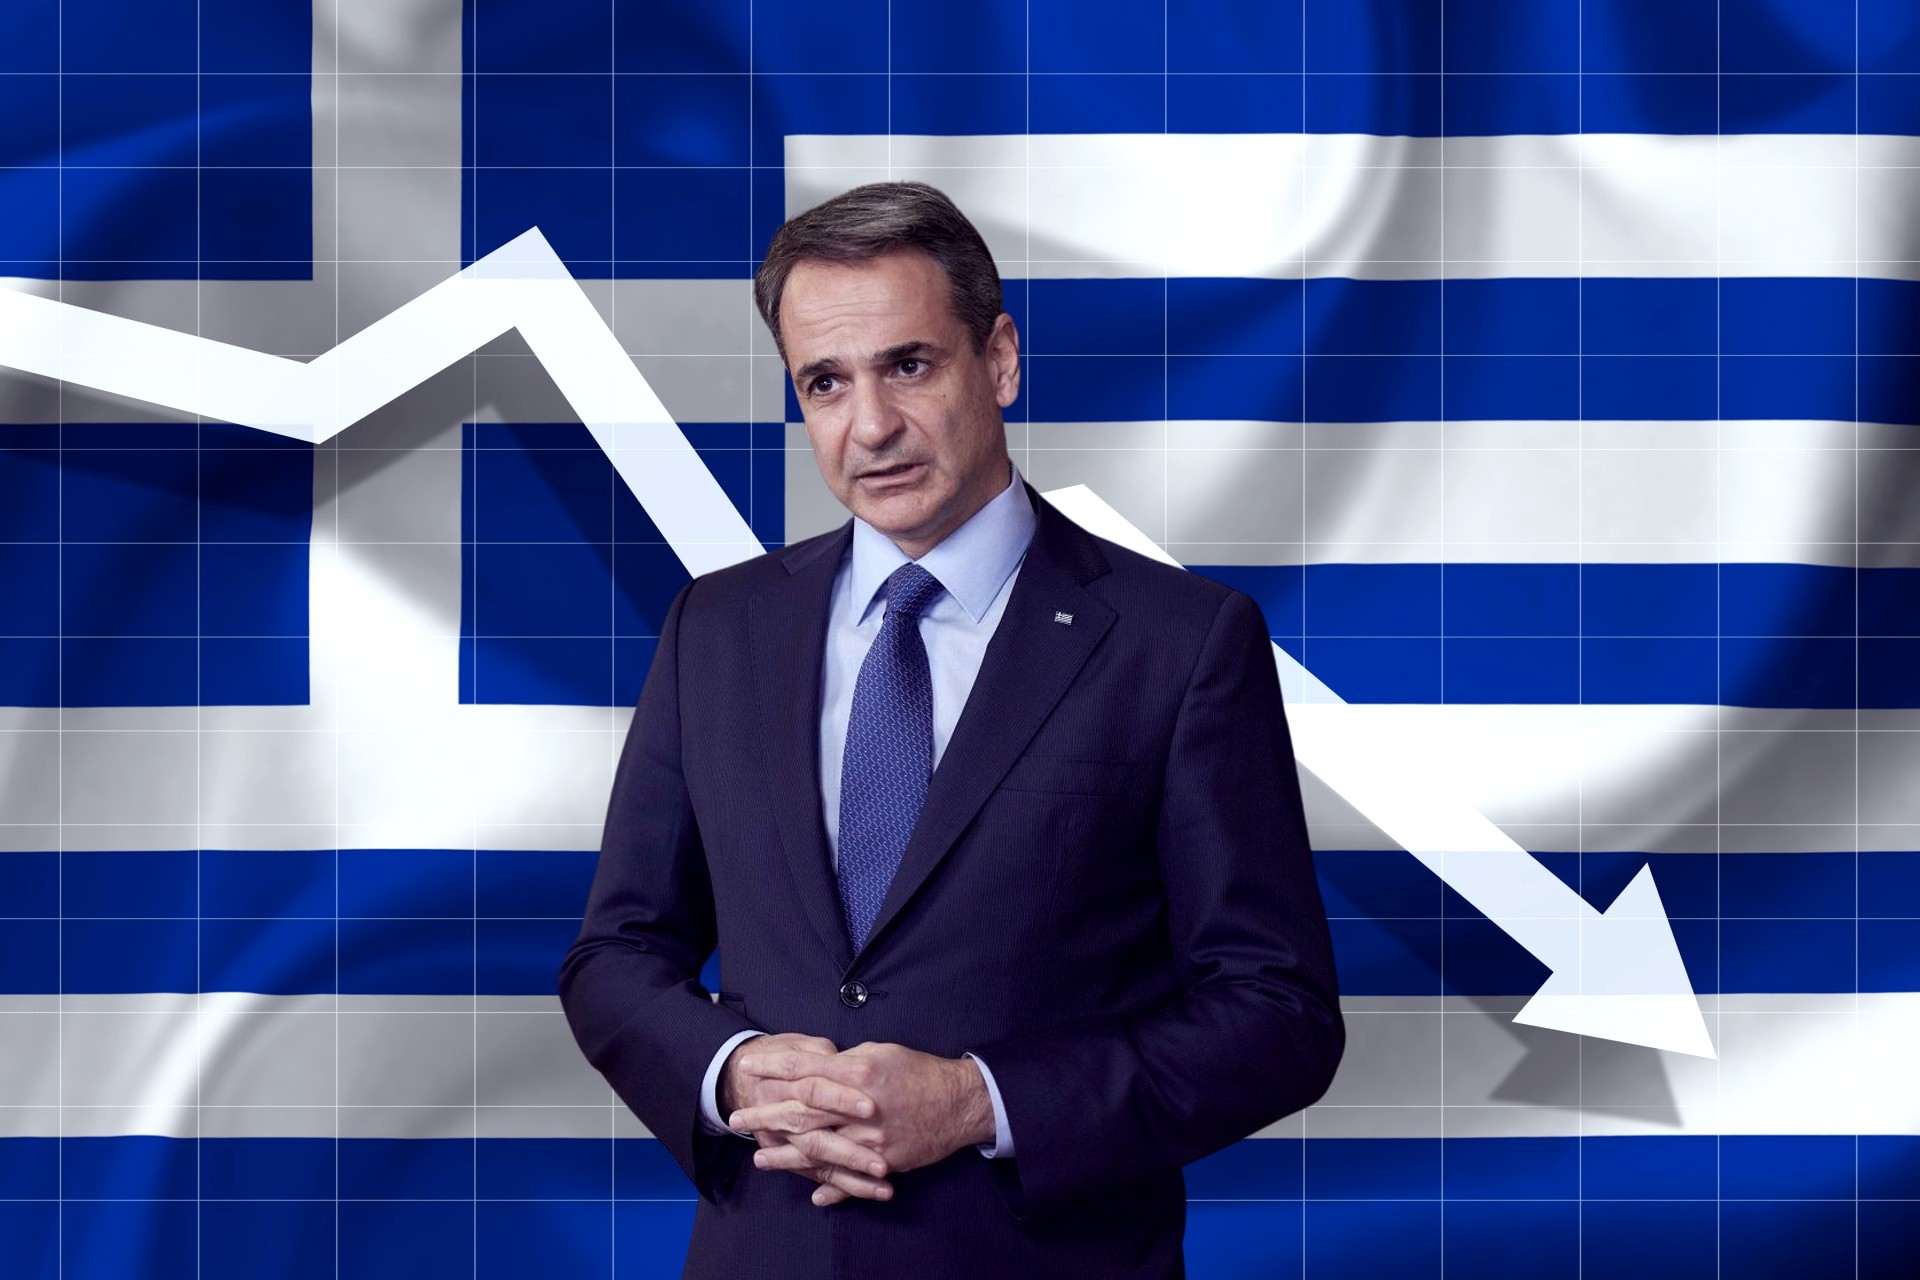 Σε χαμηλά δυόμισι μηνών έπεσε το Χρηματιστήριο Αθηνών - Το ζιζάνιο της αμφιβολίας και της σύγχυσης μετά τις αποφάσεις της κυβέρνησης – Ο φόρος στα διυλιστήρια και ο… φόβος των τραπεζών – Γύρισαν αρνητικά το έτος πολλά blue chips – Μεγάλες οι απώλειες από τις εκλογές!